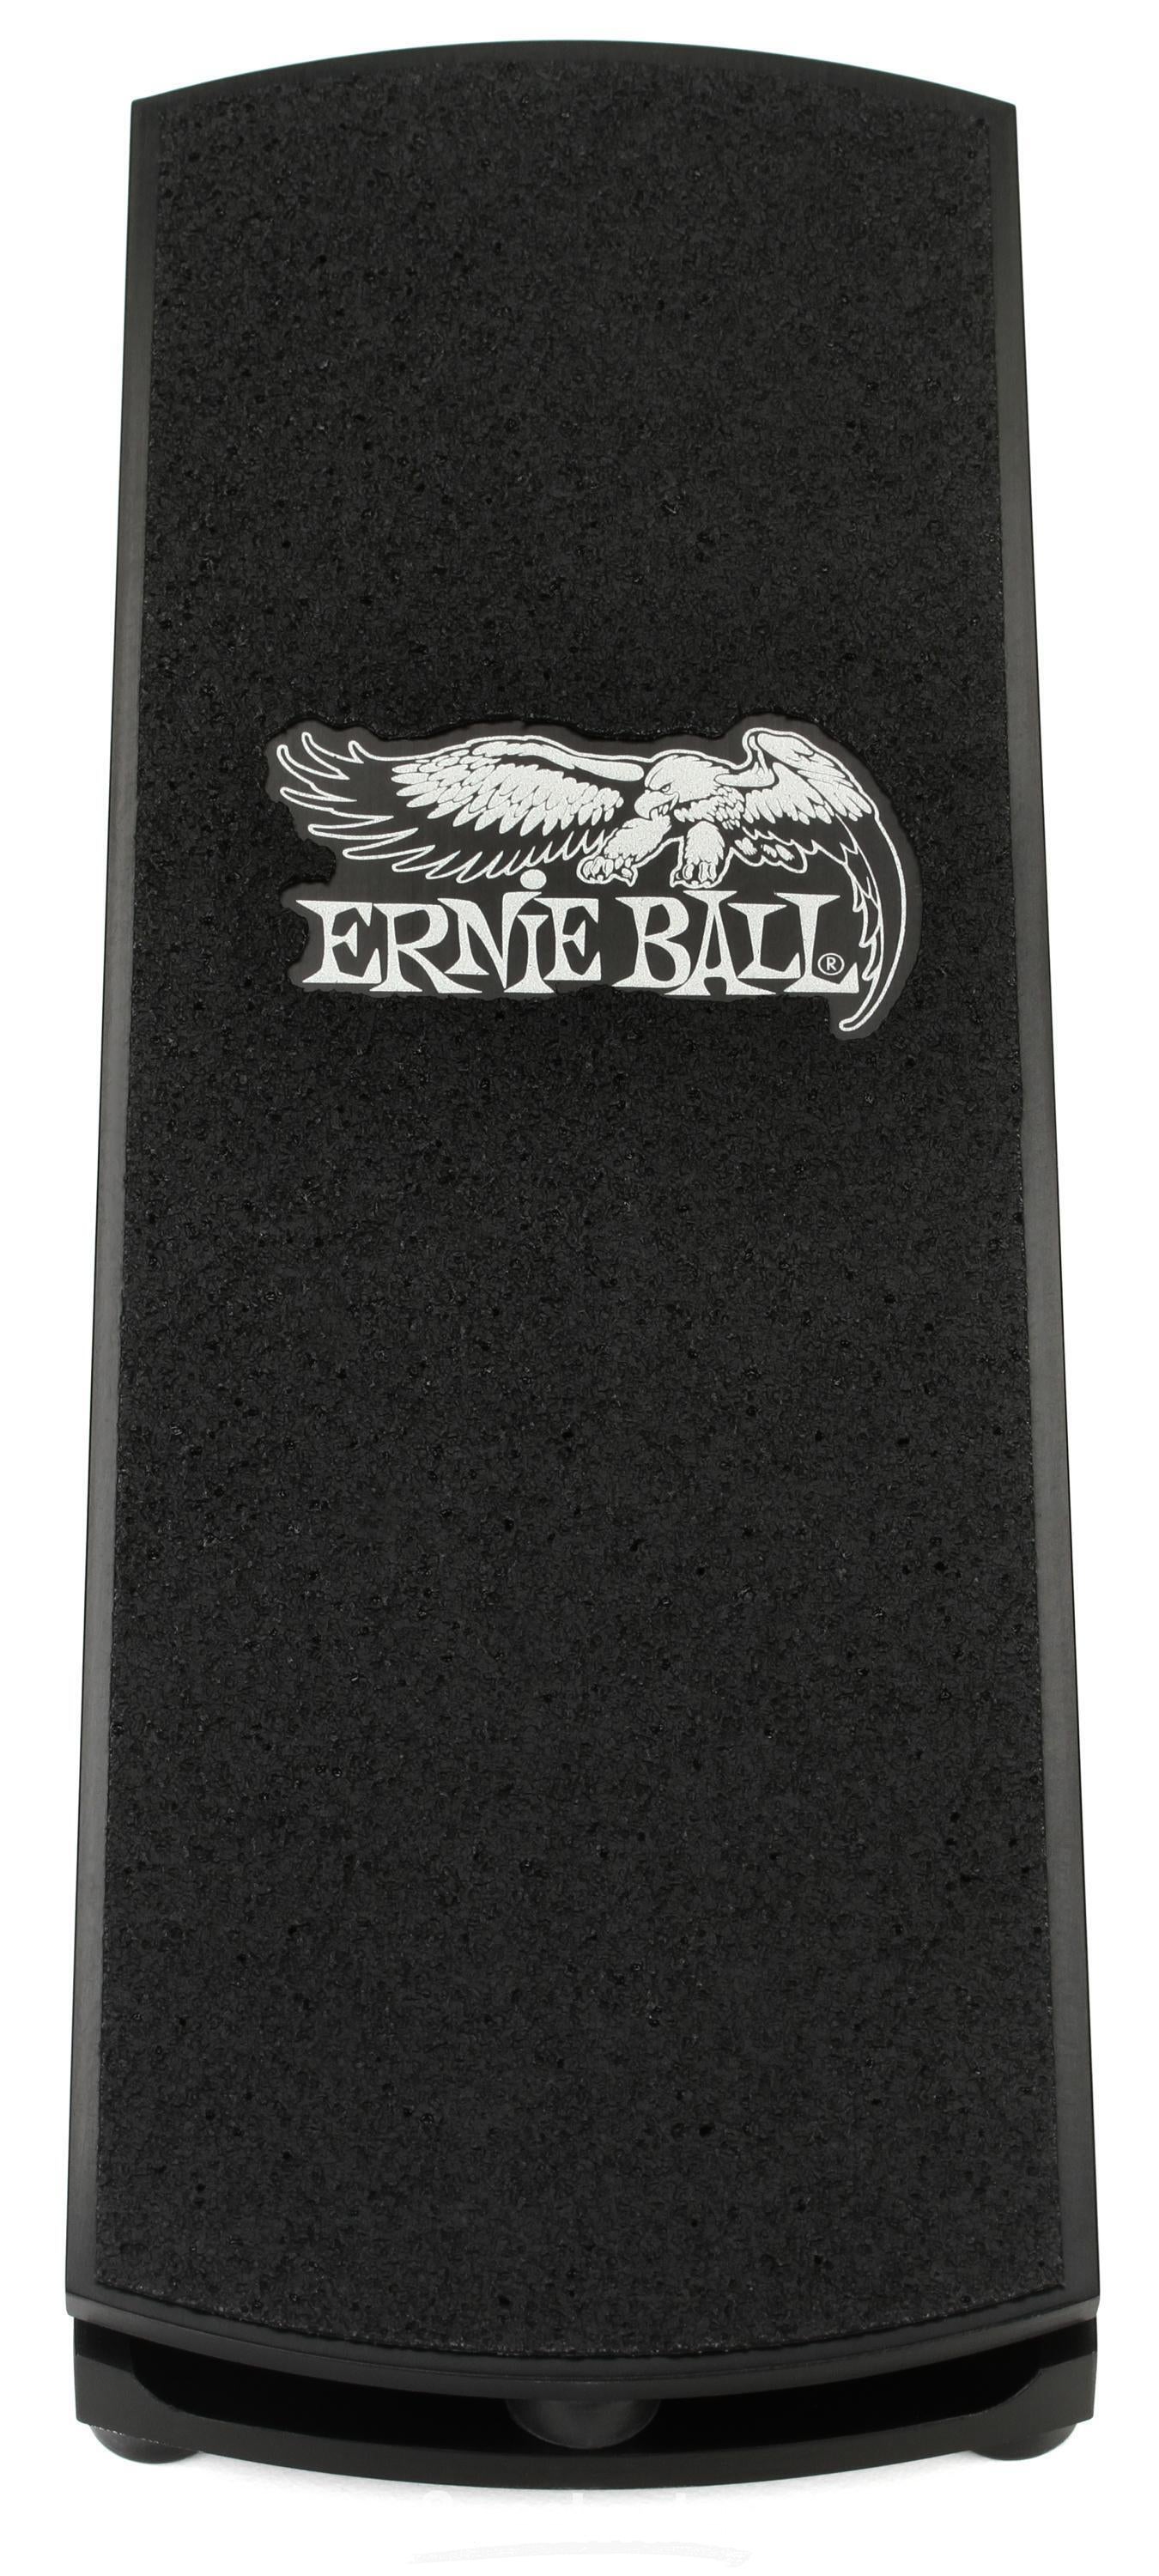 Ernie Ball 40th Anniversary Volume Pedal